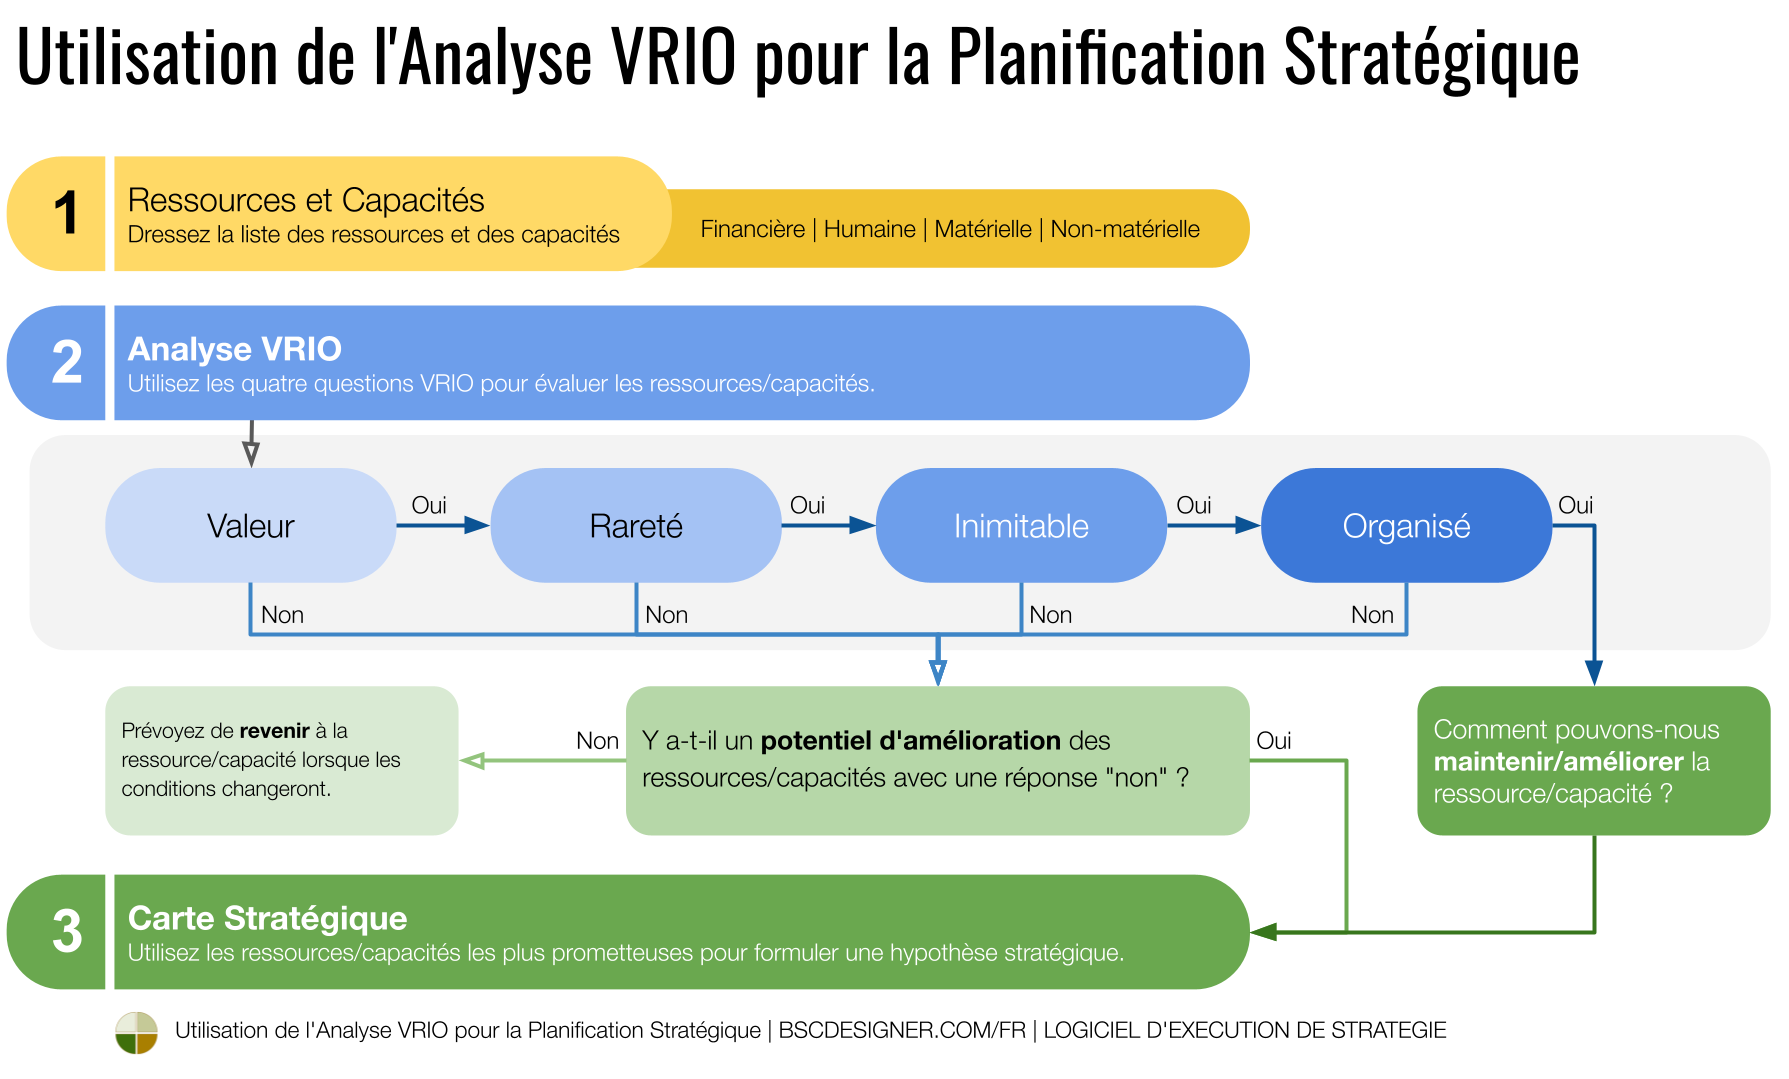 Utiliser VRIO pour la planification stratégique